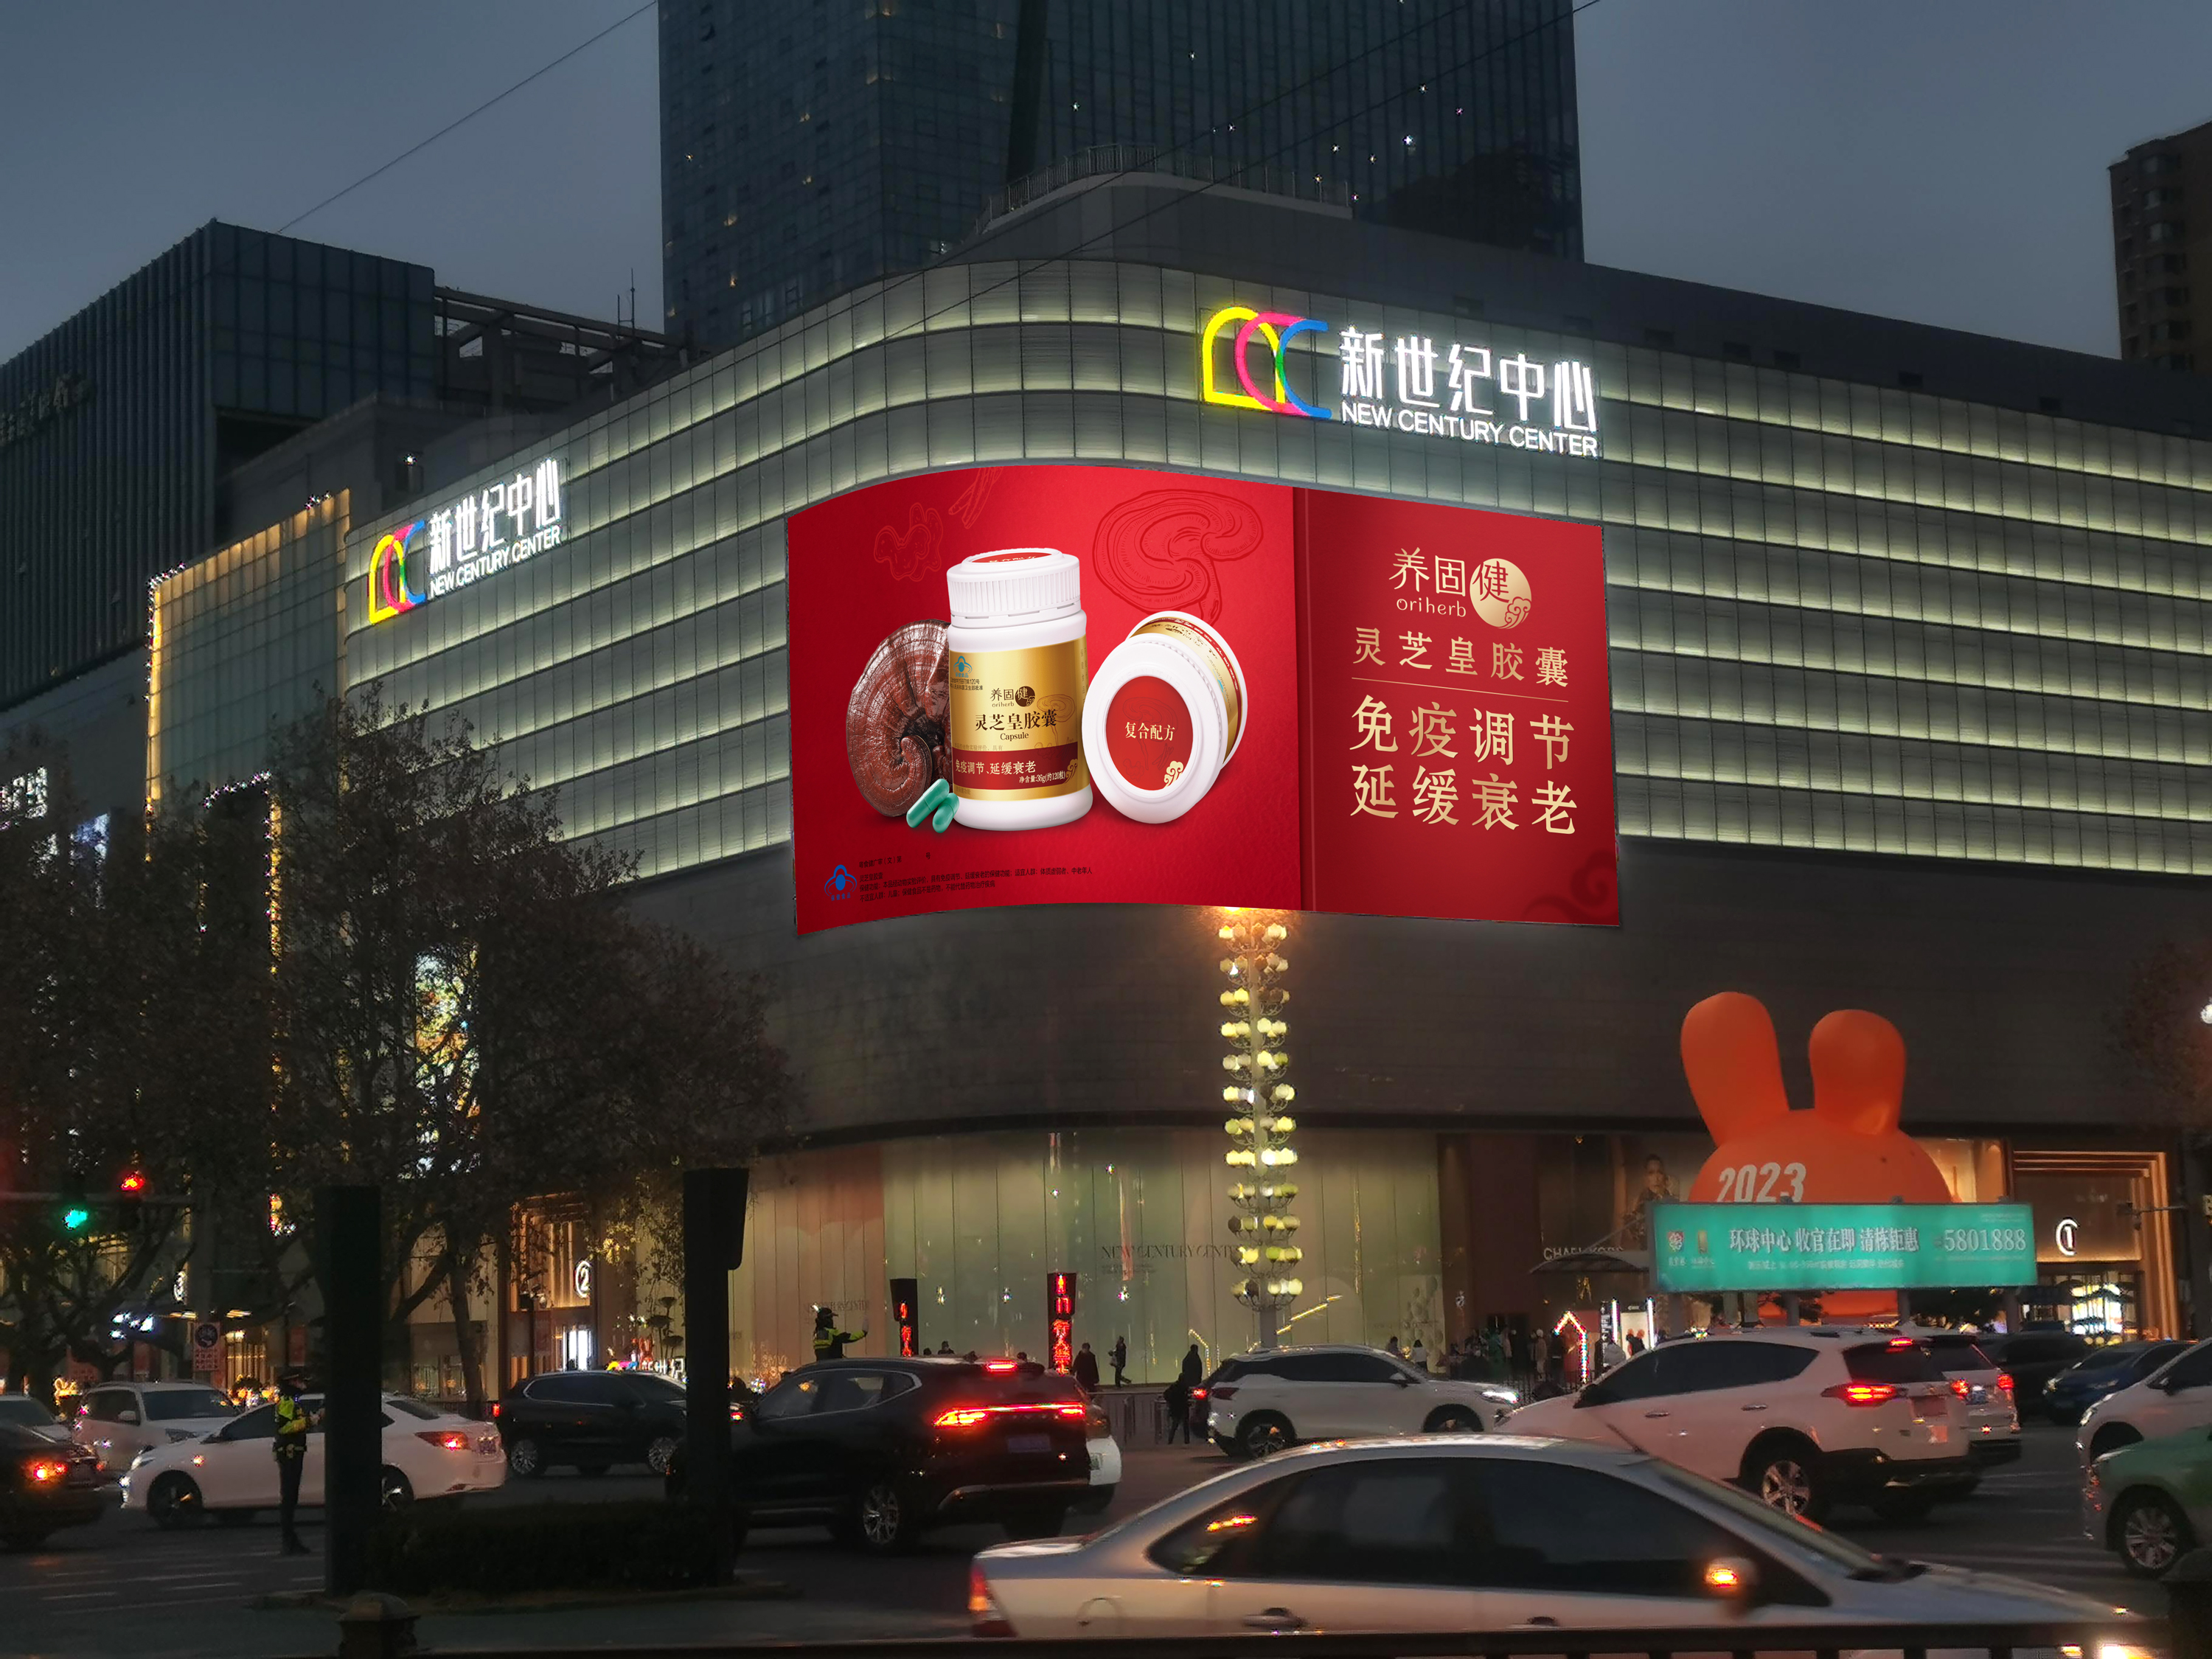 9 邯鄲-新世紀廣場LED